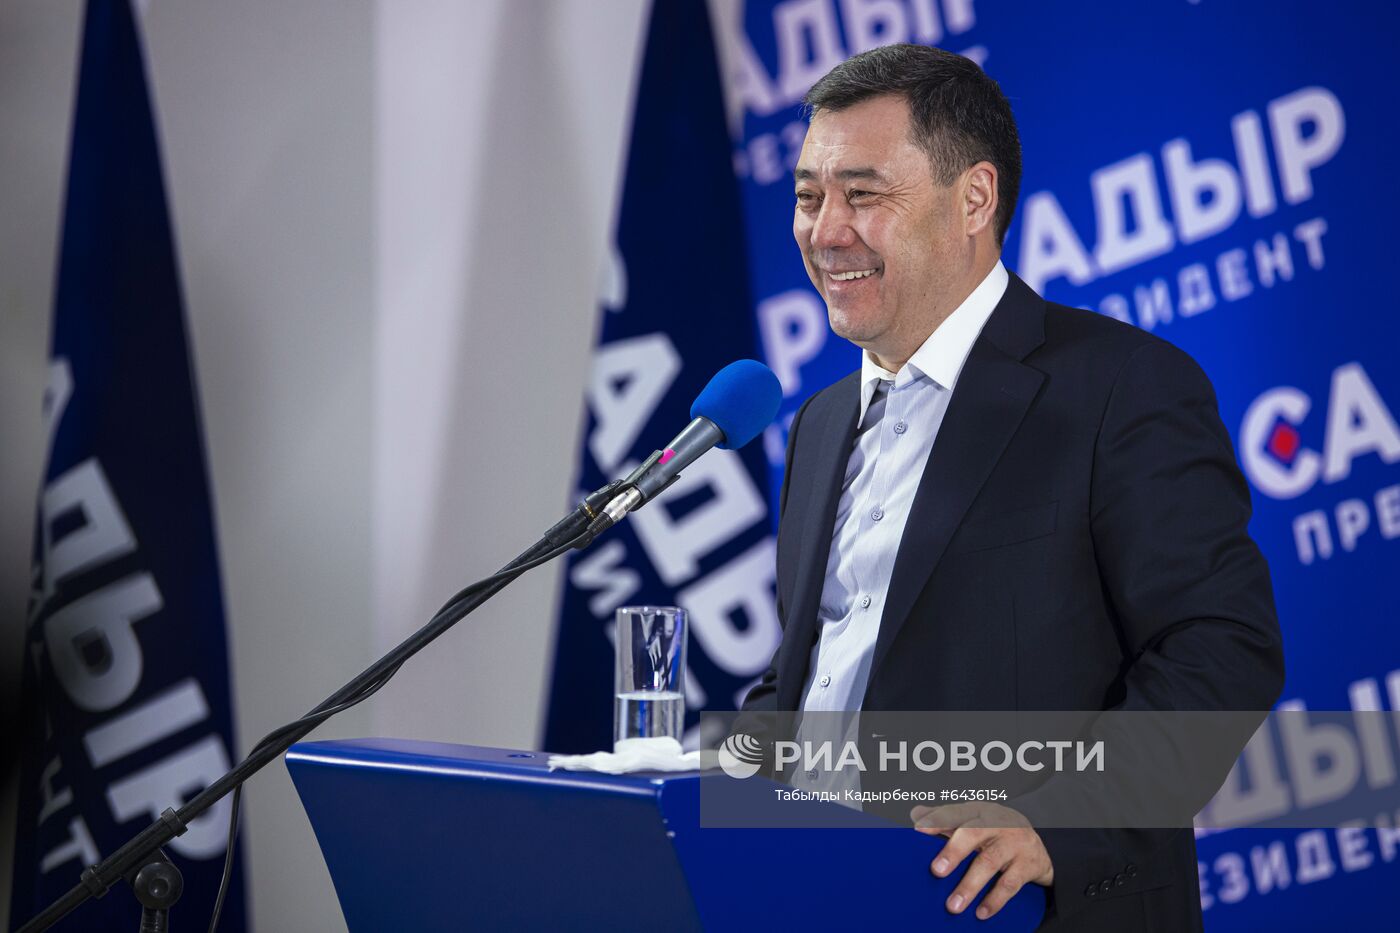 Пресс-конференция С. Жапарова по итогам выборов в Киргизии